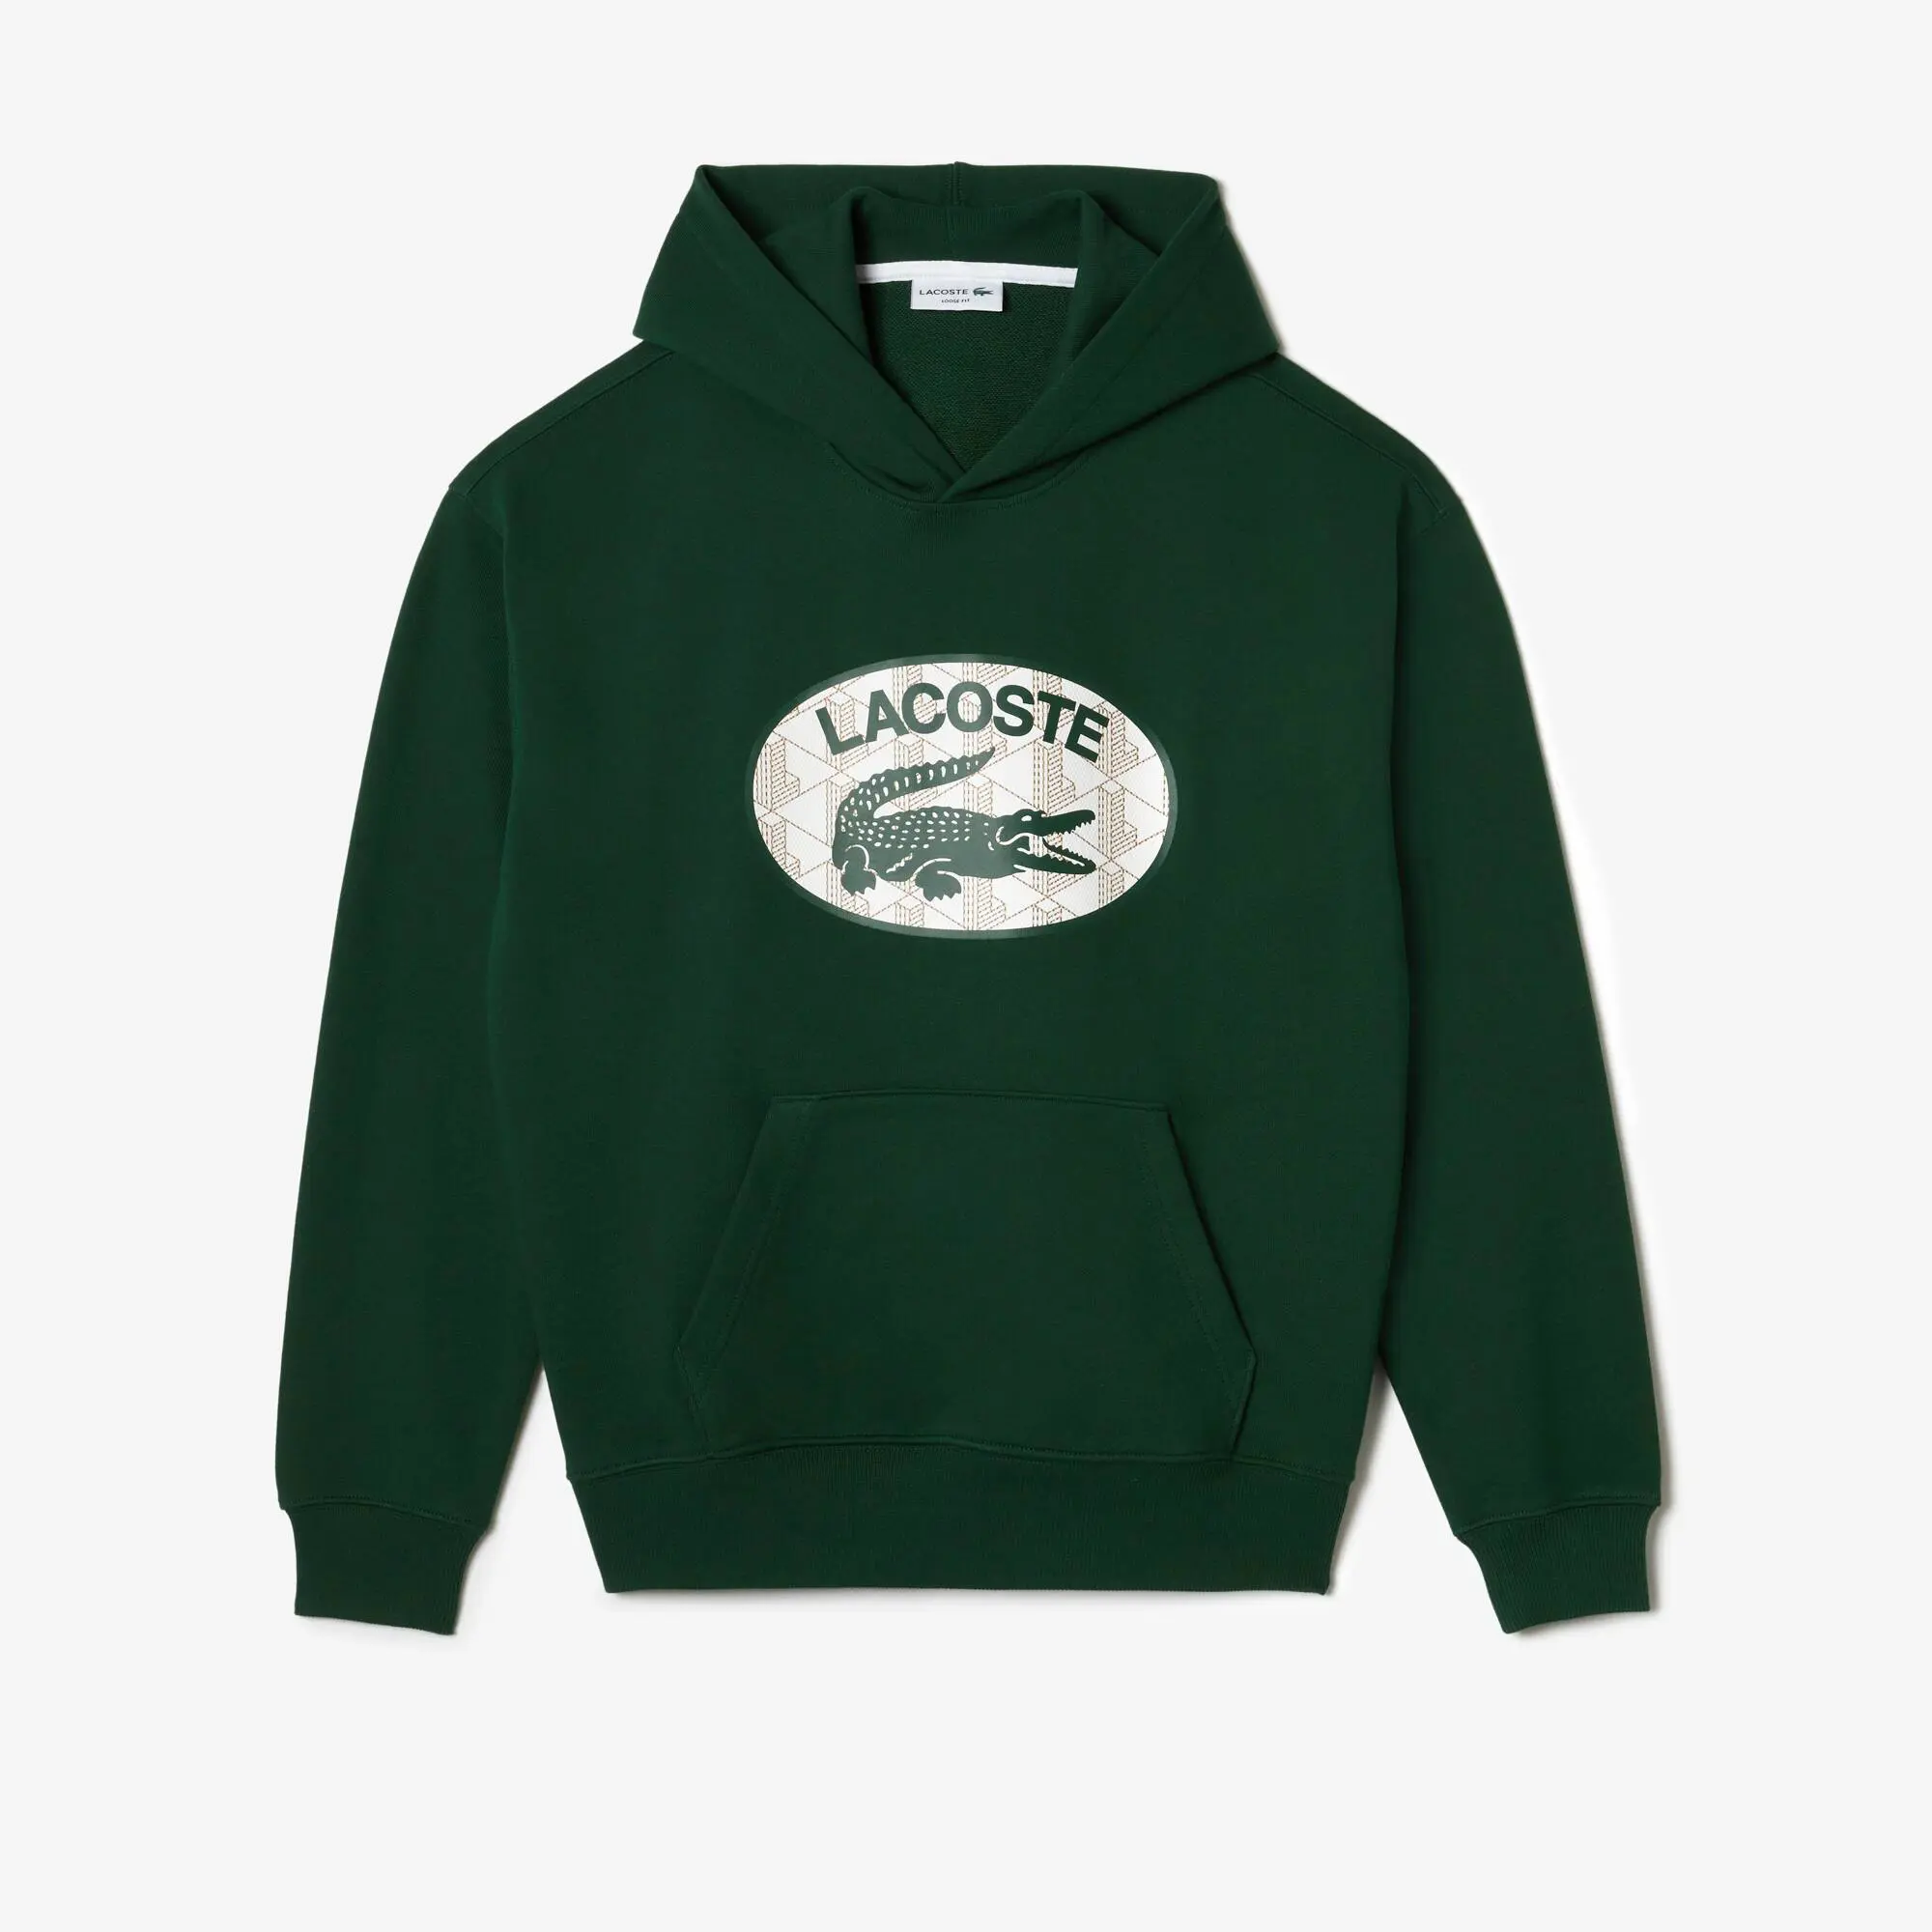 Lacoste Men's Loose Fit Branded Monogram Hooded Sweatshirt. 2